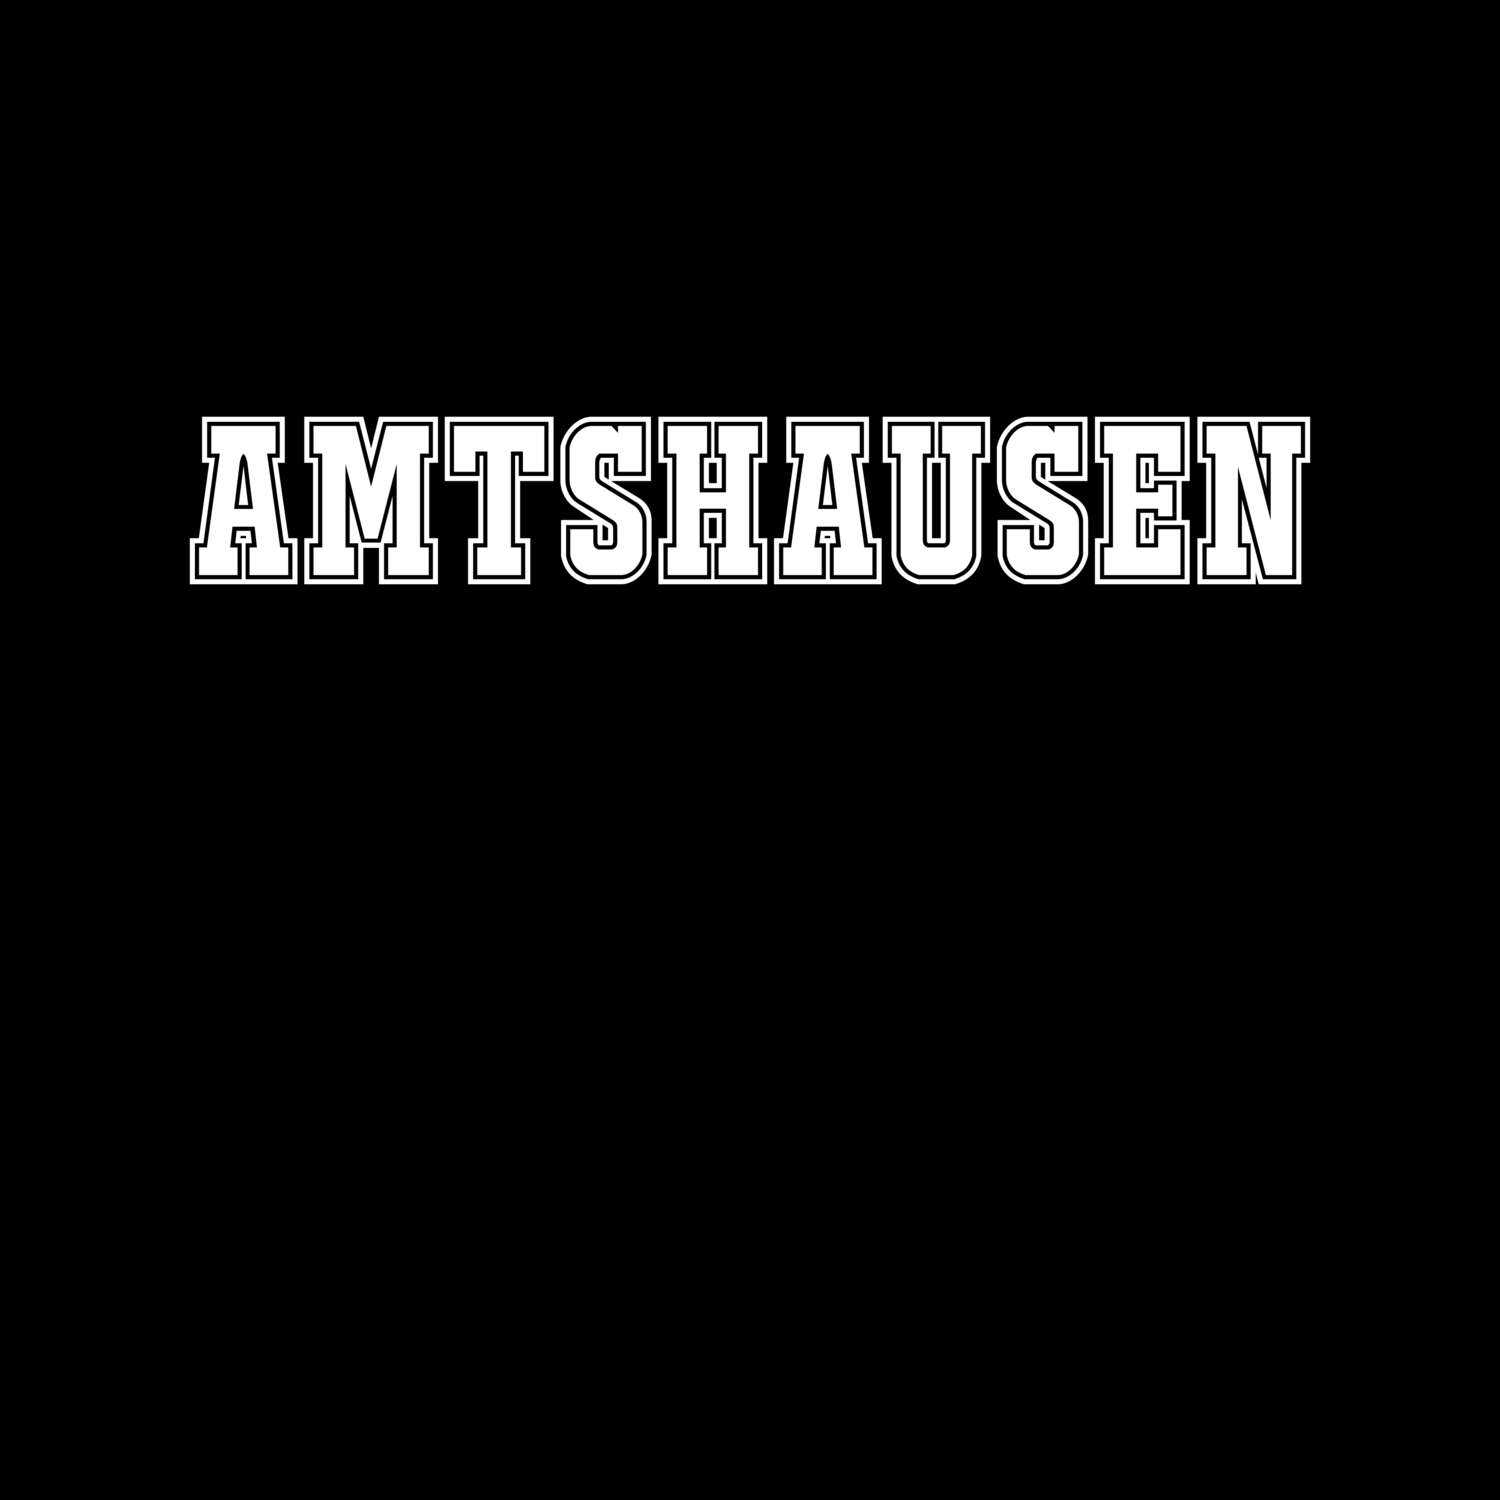 Amtshausen T-Shirt »Classic«